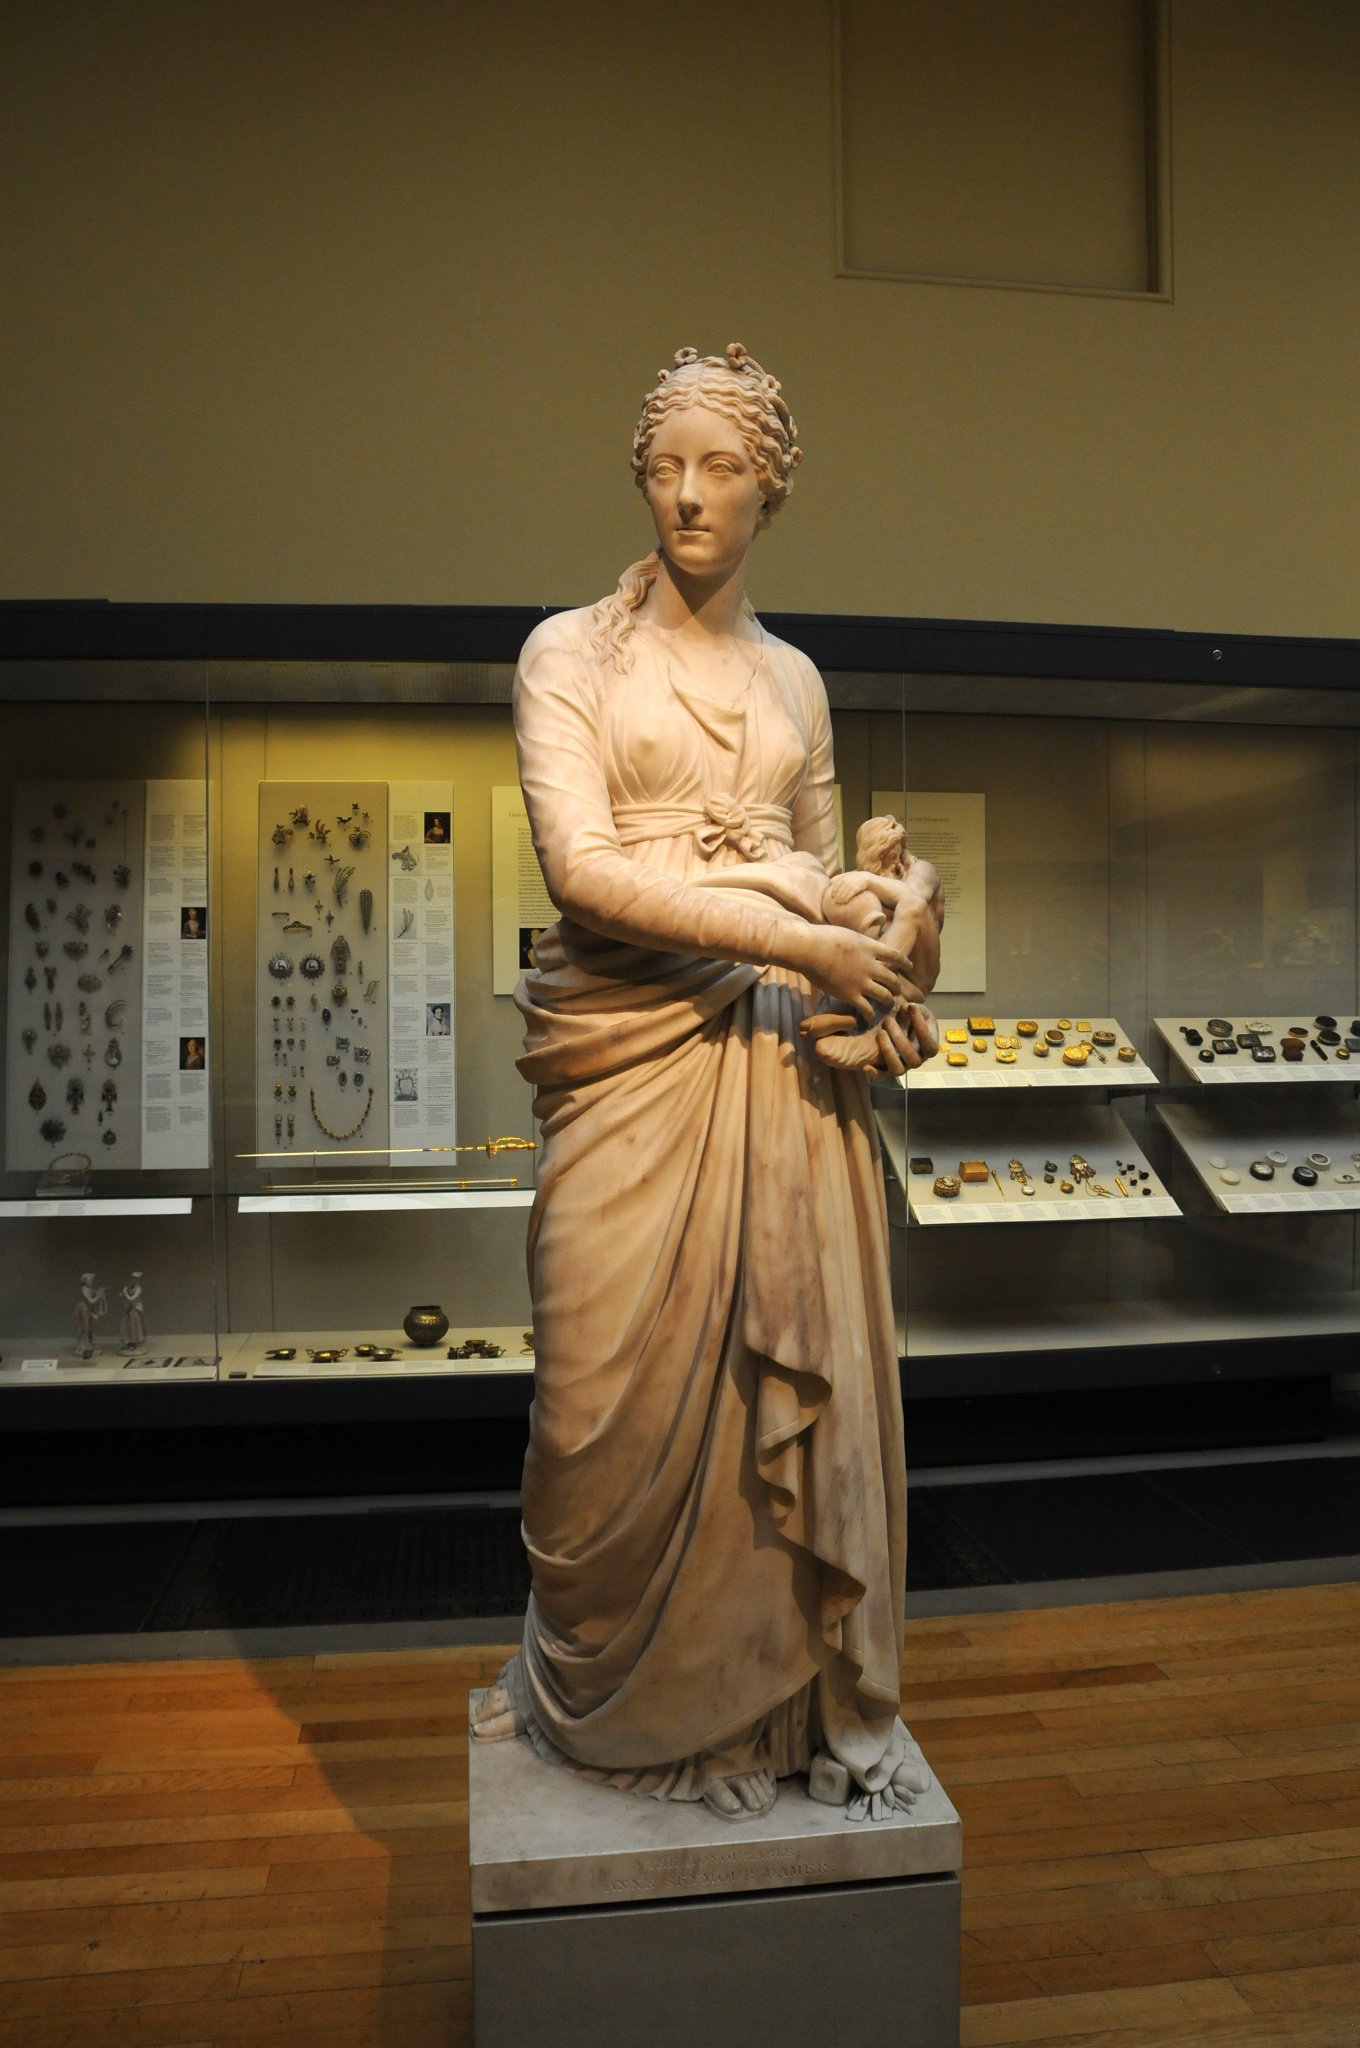 DSC_5828_2.jpg - Paní Anne Seymour Damer RA (1748-1828). Autor: Giuseppe Cerrachi (1751-1801), mramor, asi 1777Paní Damer byla aristokratka, která se zabývala sochařstvím, specializovala se na  bronzové busty a vystavovala u Královské akademie v letech 1784 a 1818 (její bronzová busta Sira Josepha Bankse je v Královské knihovně). zemřal v roce 1828 a byla pohřbena se svýmo sochařskými nástroji a popelem svého oblíbeného psa.